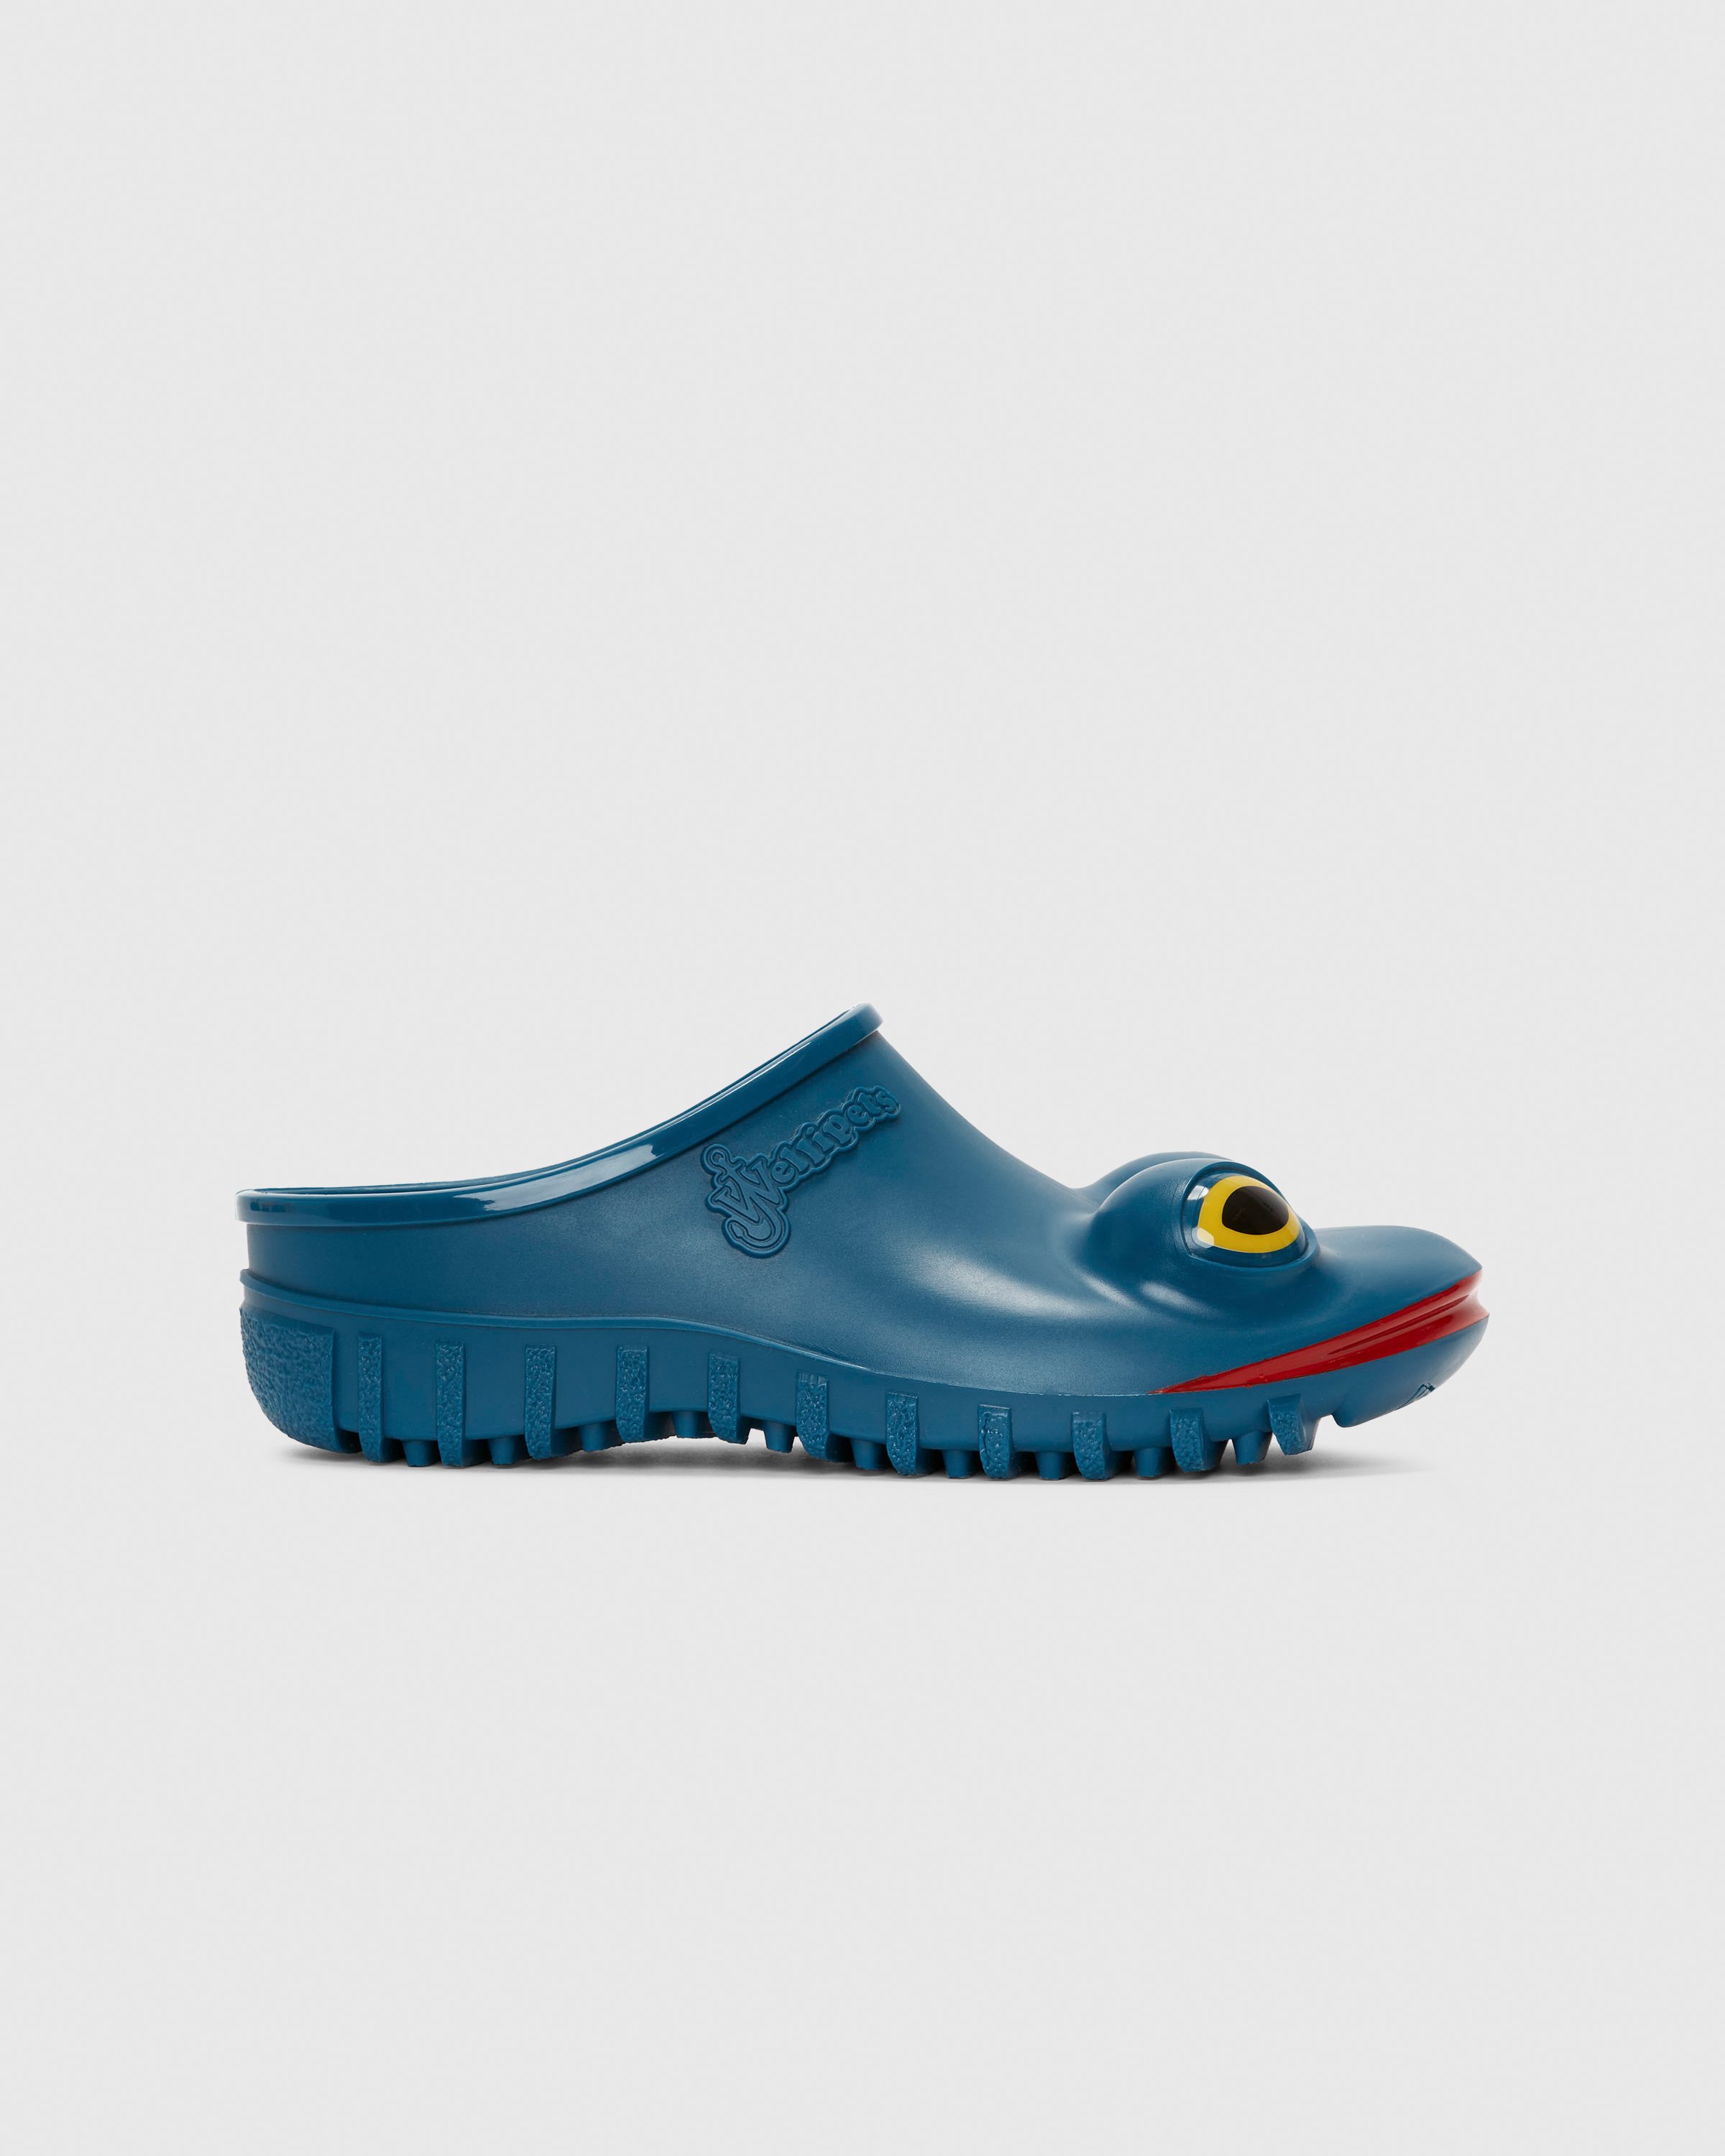 J.W. Anderson x Wellipets - Frog Loafer Blue - Footwear - Blue - Image 1